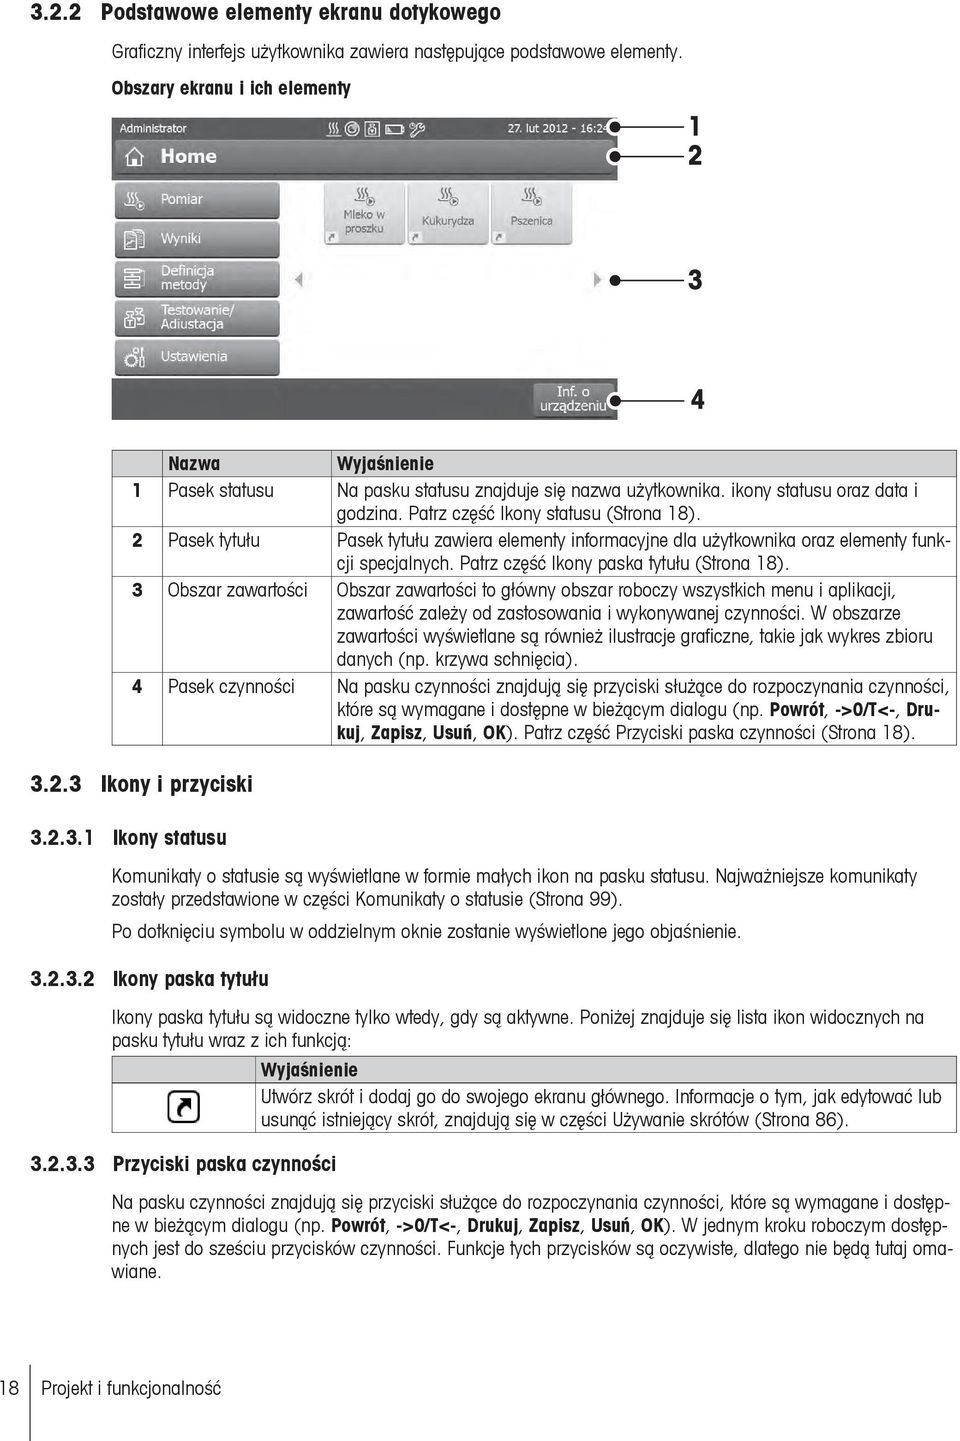 2 Pasek tytułu Pasek tytułu zawiera elementy informacyjne dla użytkownika oraz elementy funkcji specjalnych. Patrz część Ikony paska tytułu (Strona 18).